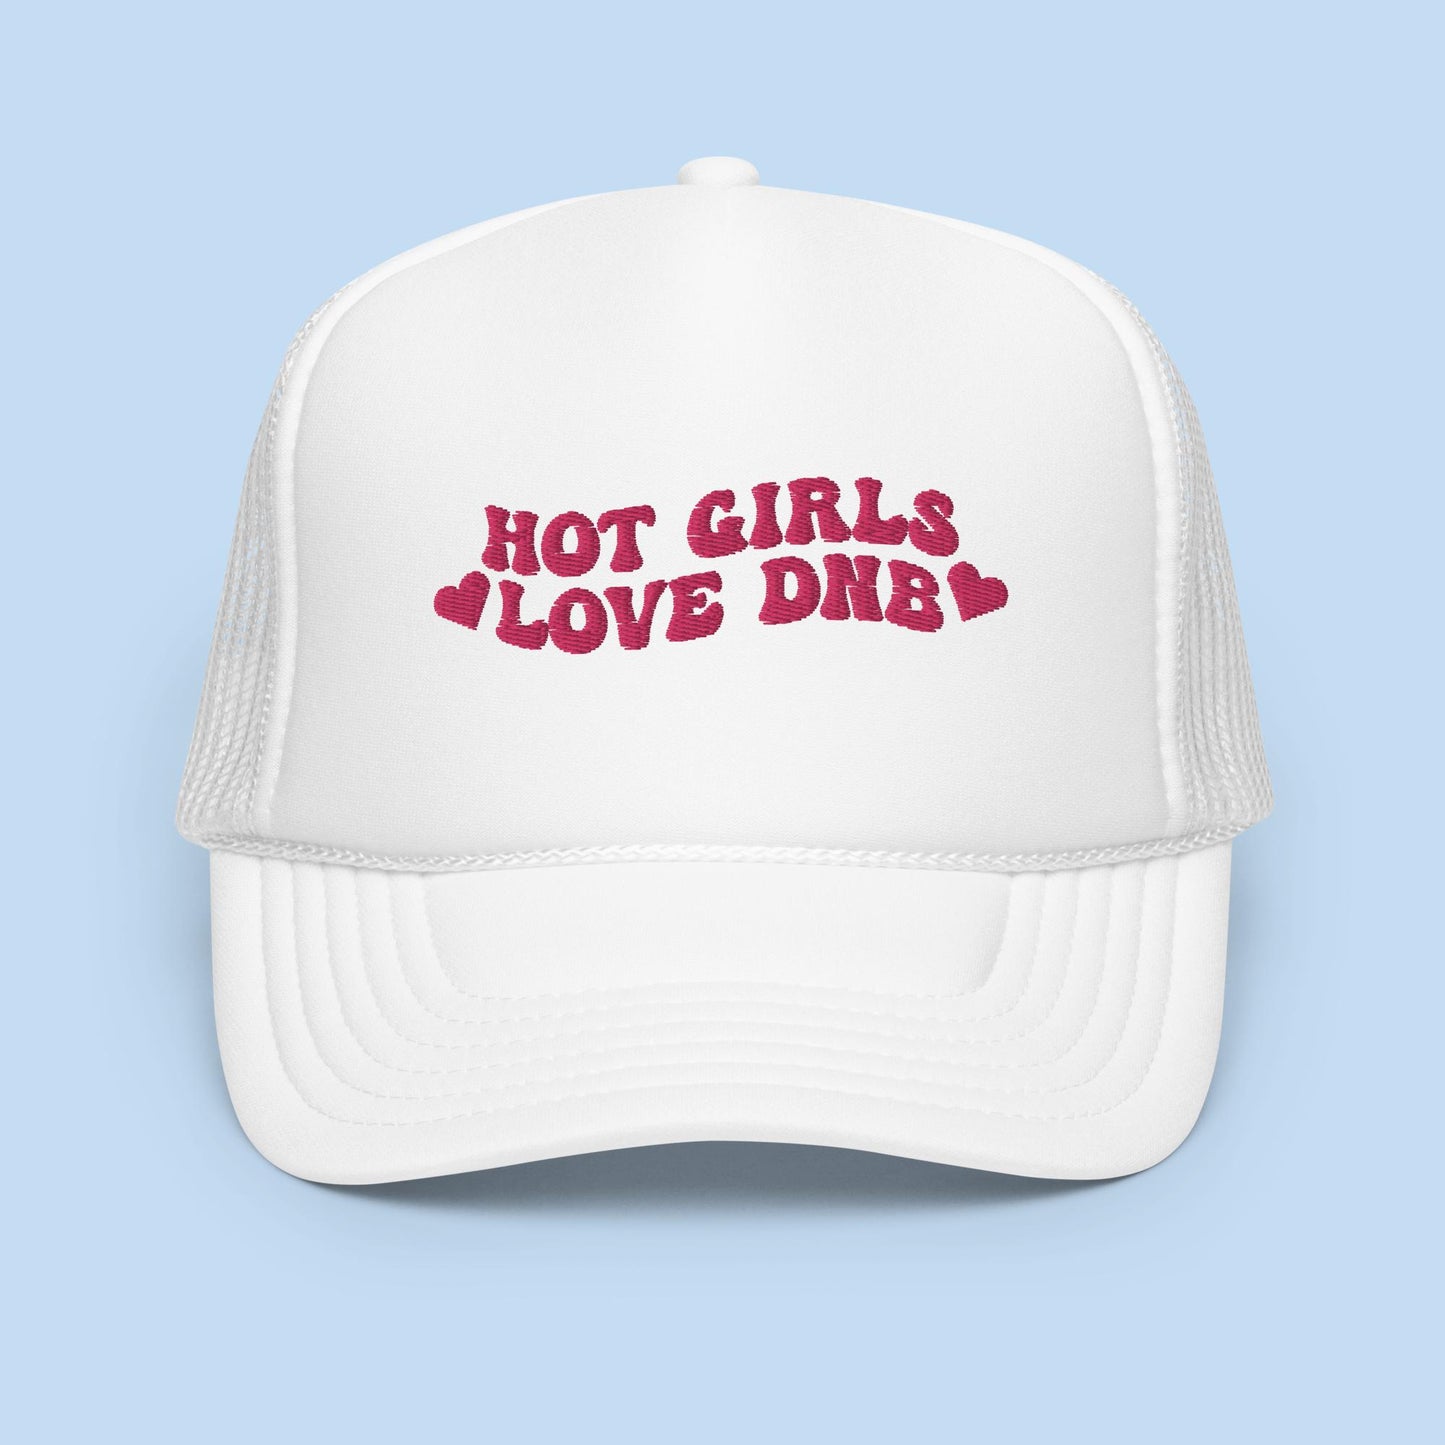 Hot Girls Love DNB Foam Trucker Hat